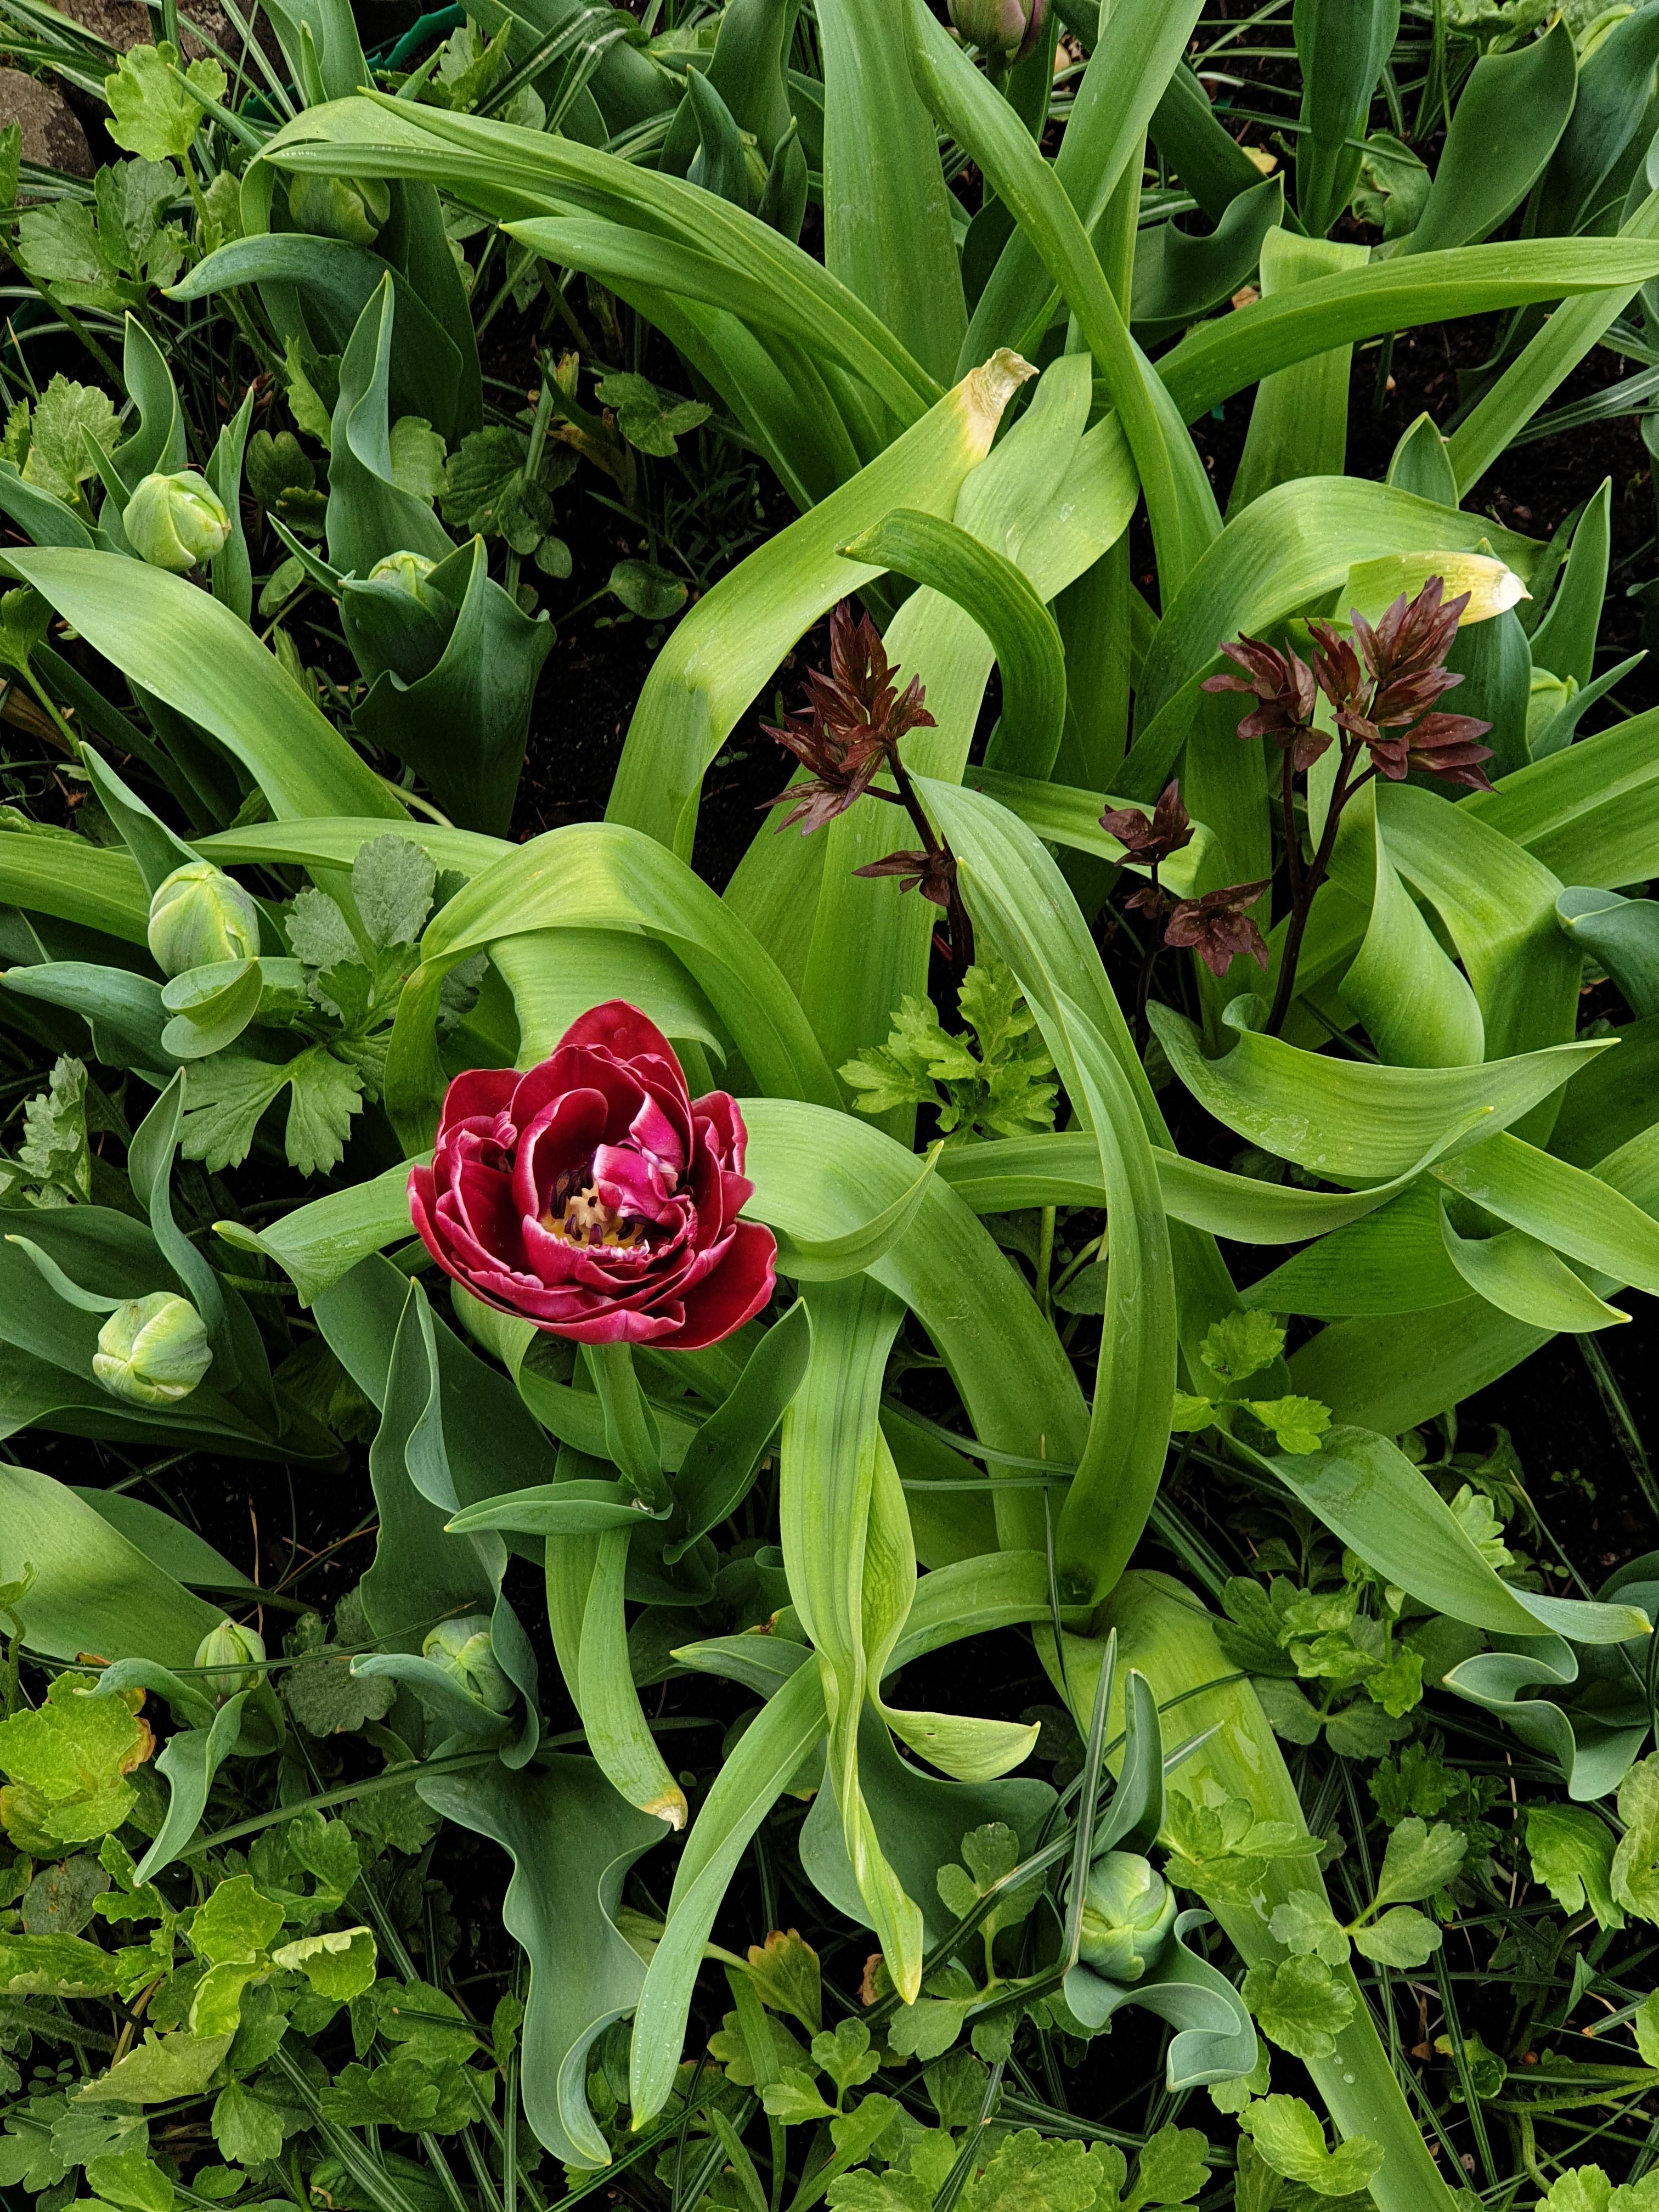 #tulpen im kleinen #beet bin gespannt wies blüht wenn alles aufgegangen is😍 #fresien #ranunkel #allium #pfingstrosen